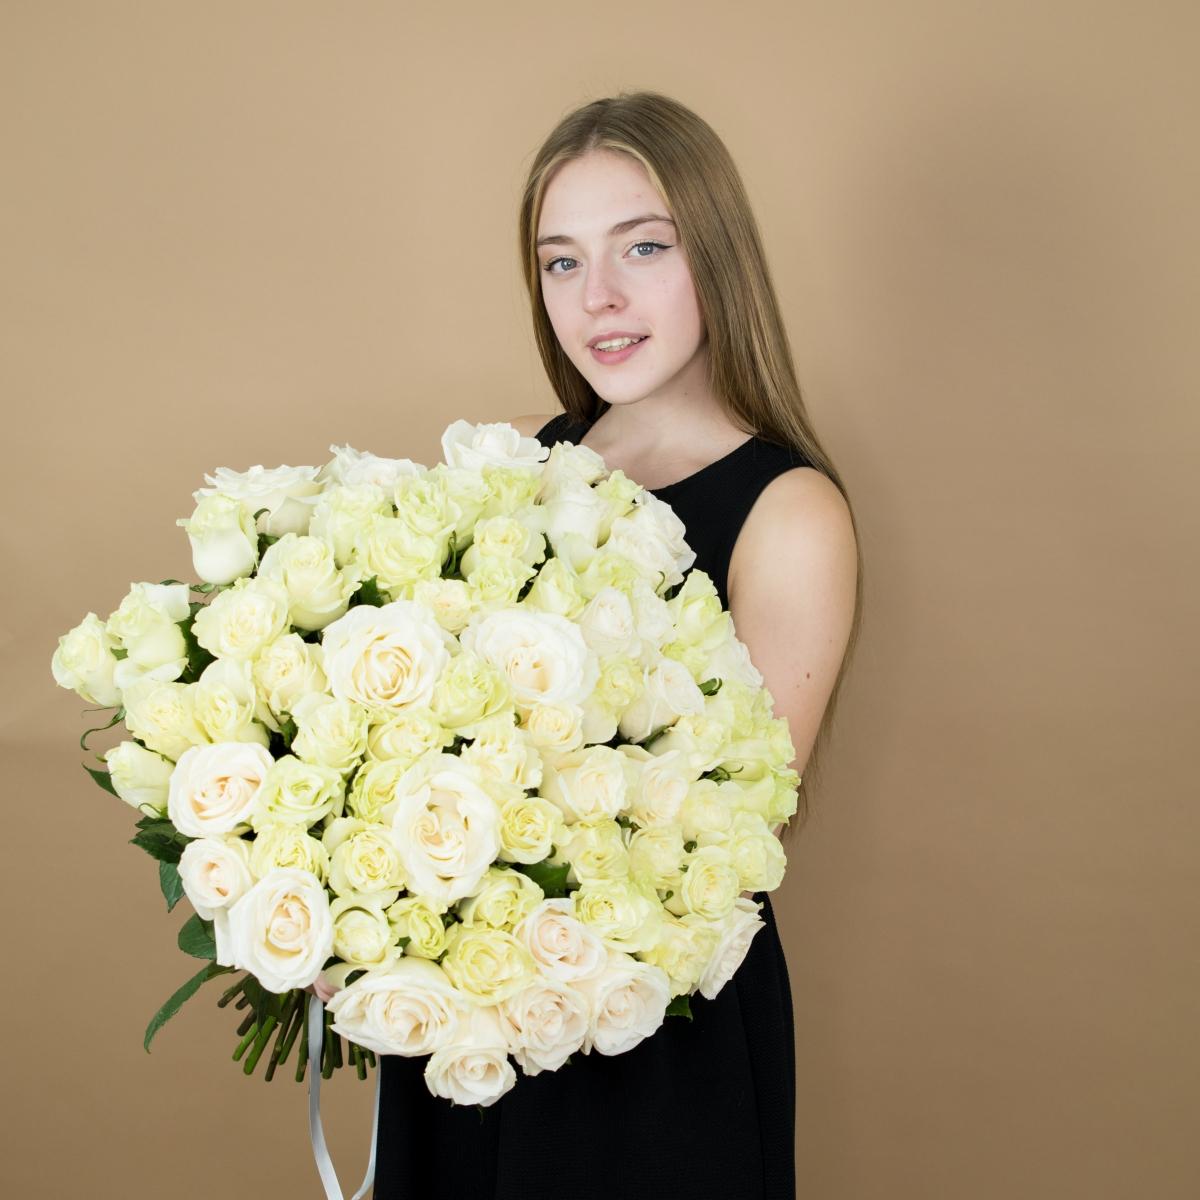 Букет из белых роз 101 шт 40 см (Эквадор) №: 12765v